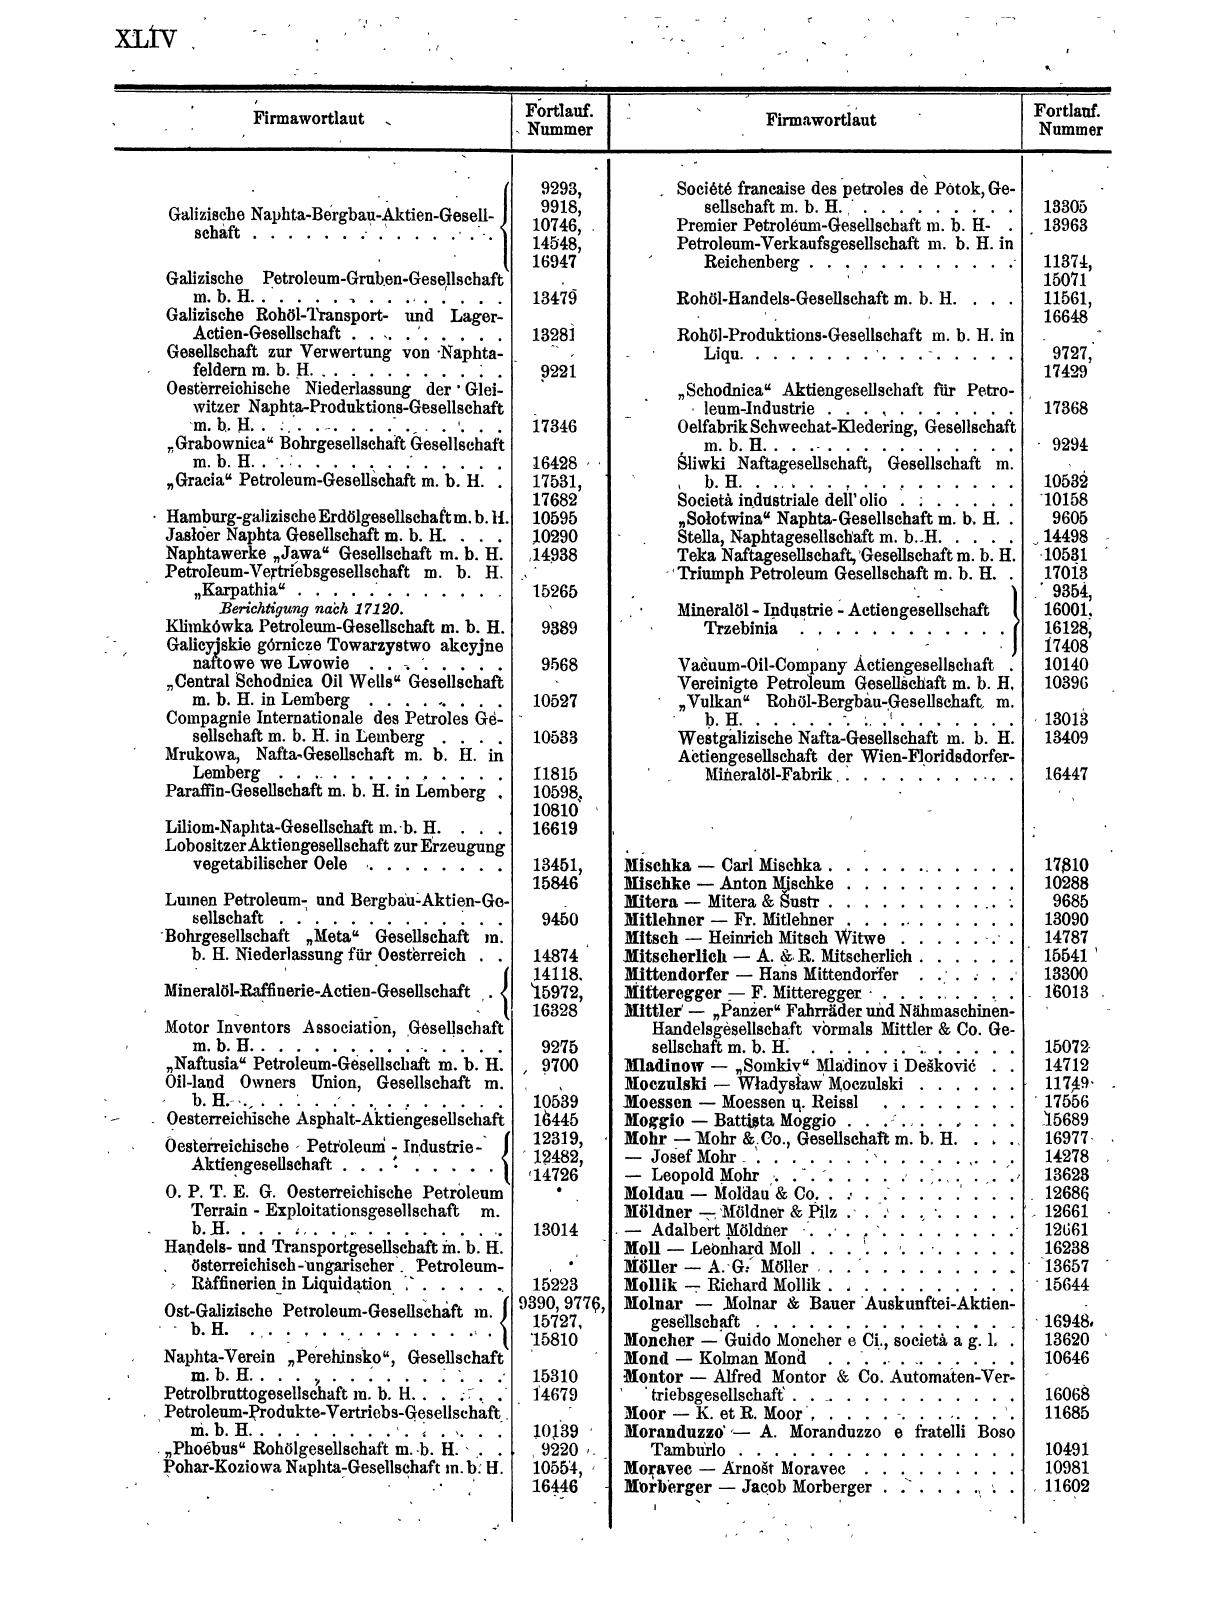 Zentralblatt für die Eintragungen in das Handelsregister 1913, Teil 2 - Seite 48